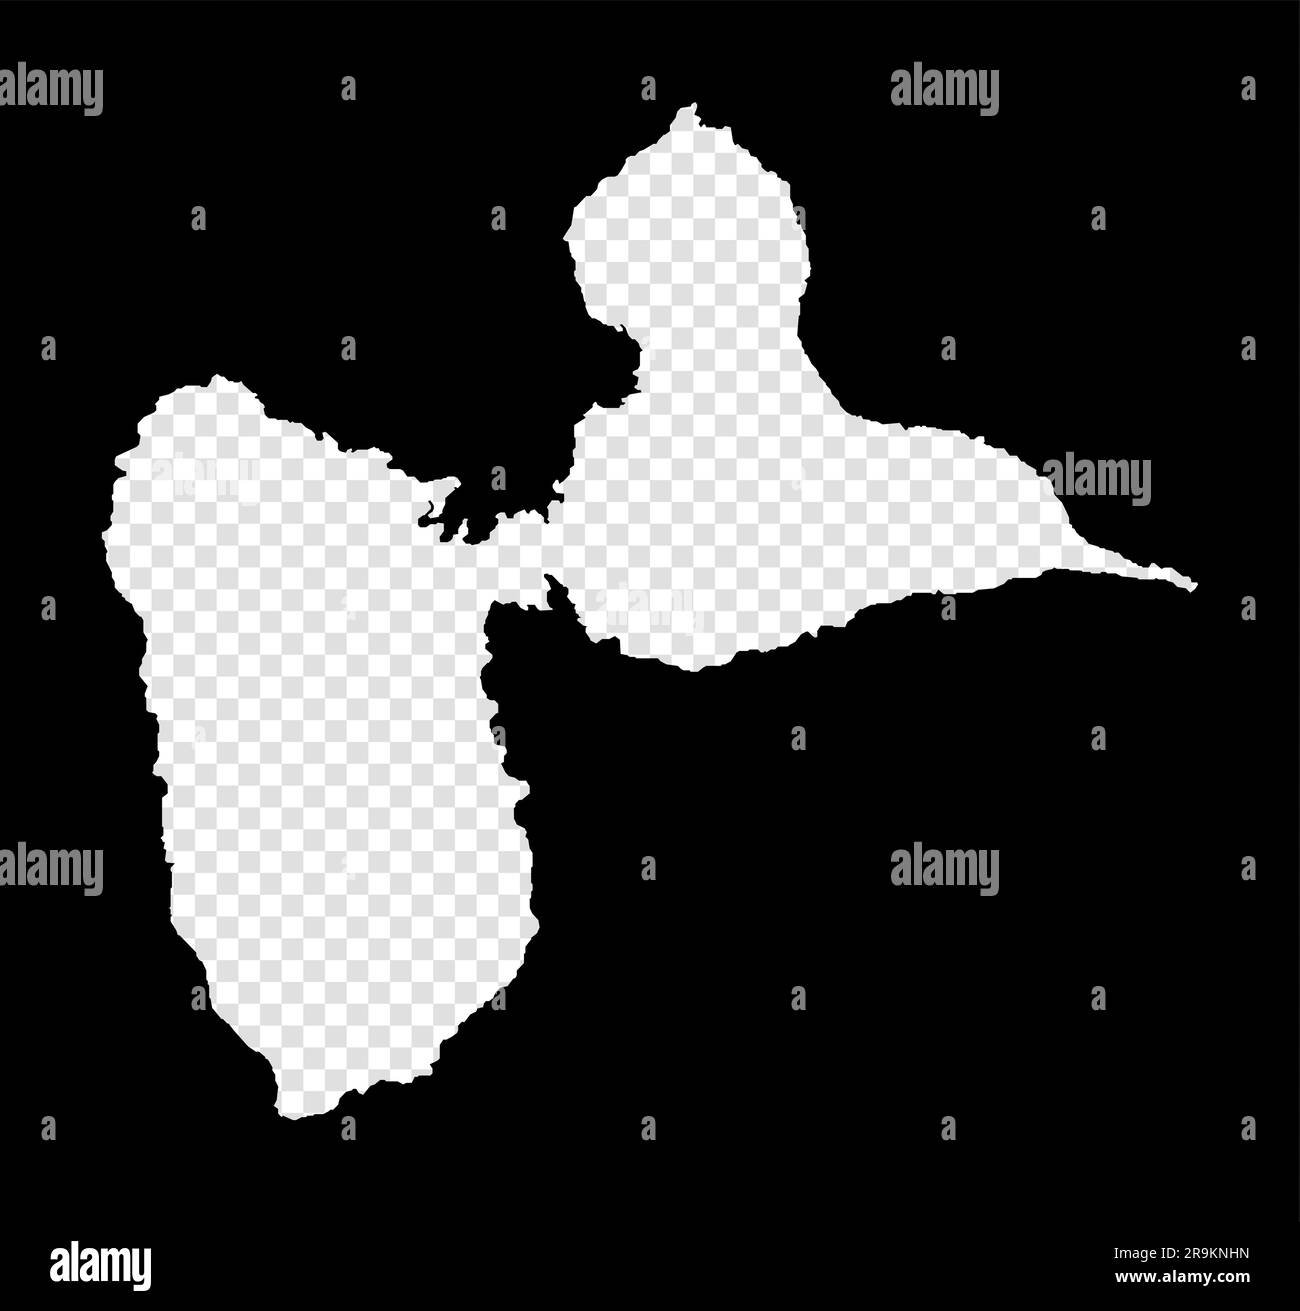 Carte de l'île de Basse-Terre. Carte transparente simple et minimale de l'île de Basse-Terre. Rectangle noir avec forme de coupe de la zone. Vecteur moderne Illustration de Vecteur